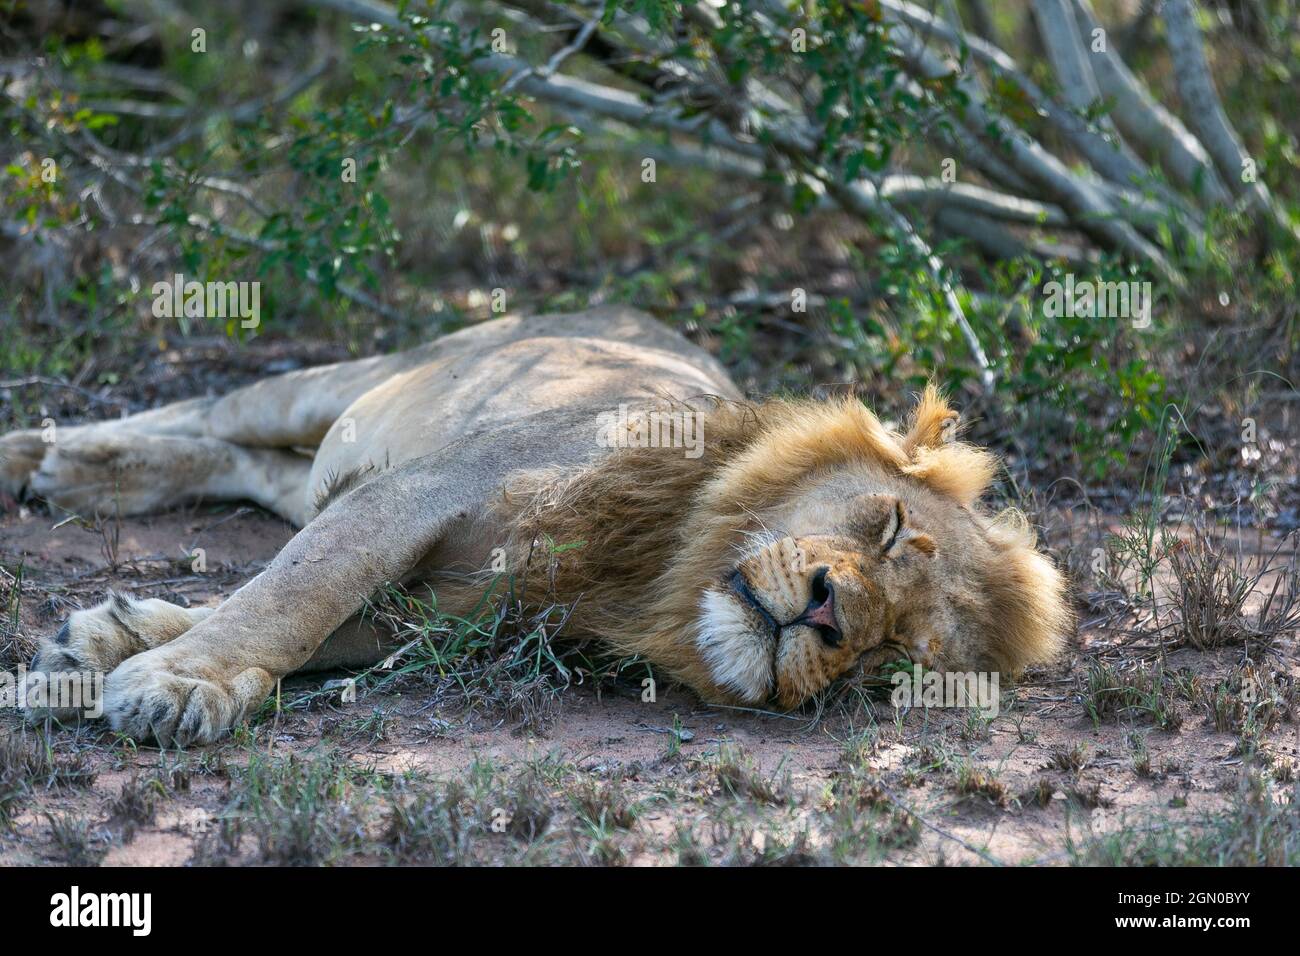 Lion sauvage dans l'habitat naturel. Safari en Afrique Banque D'Images